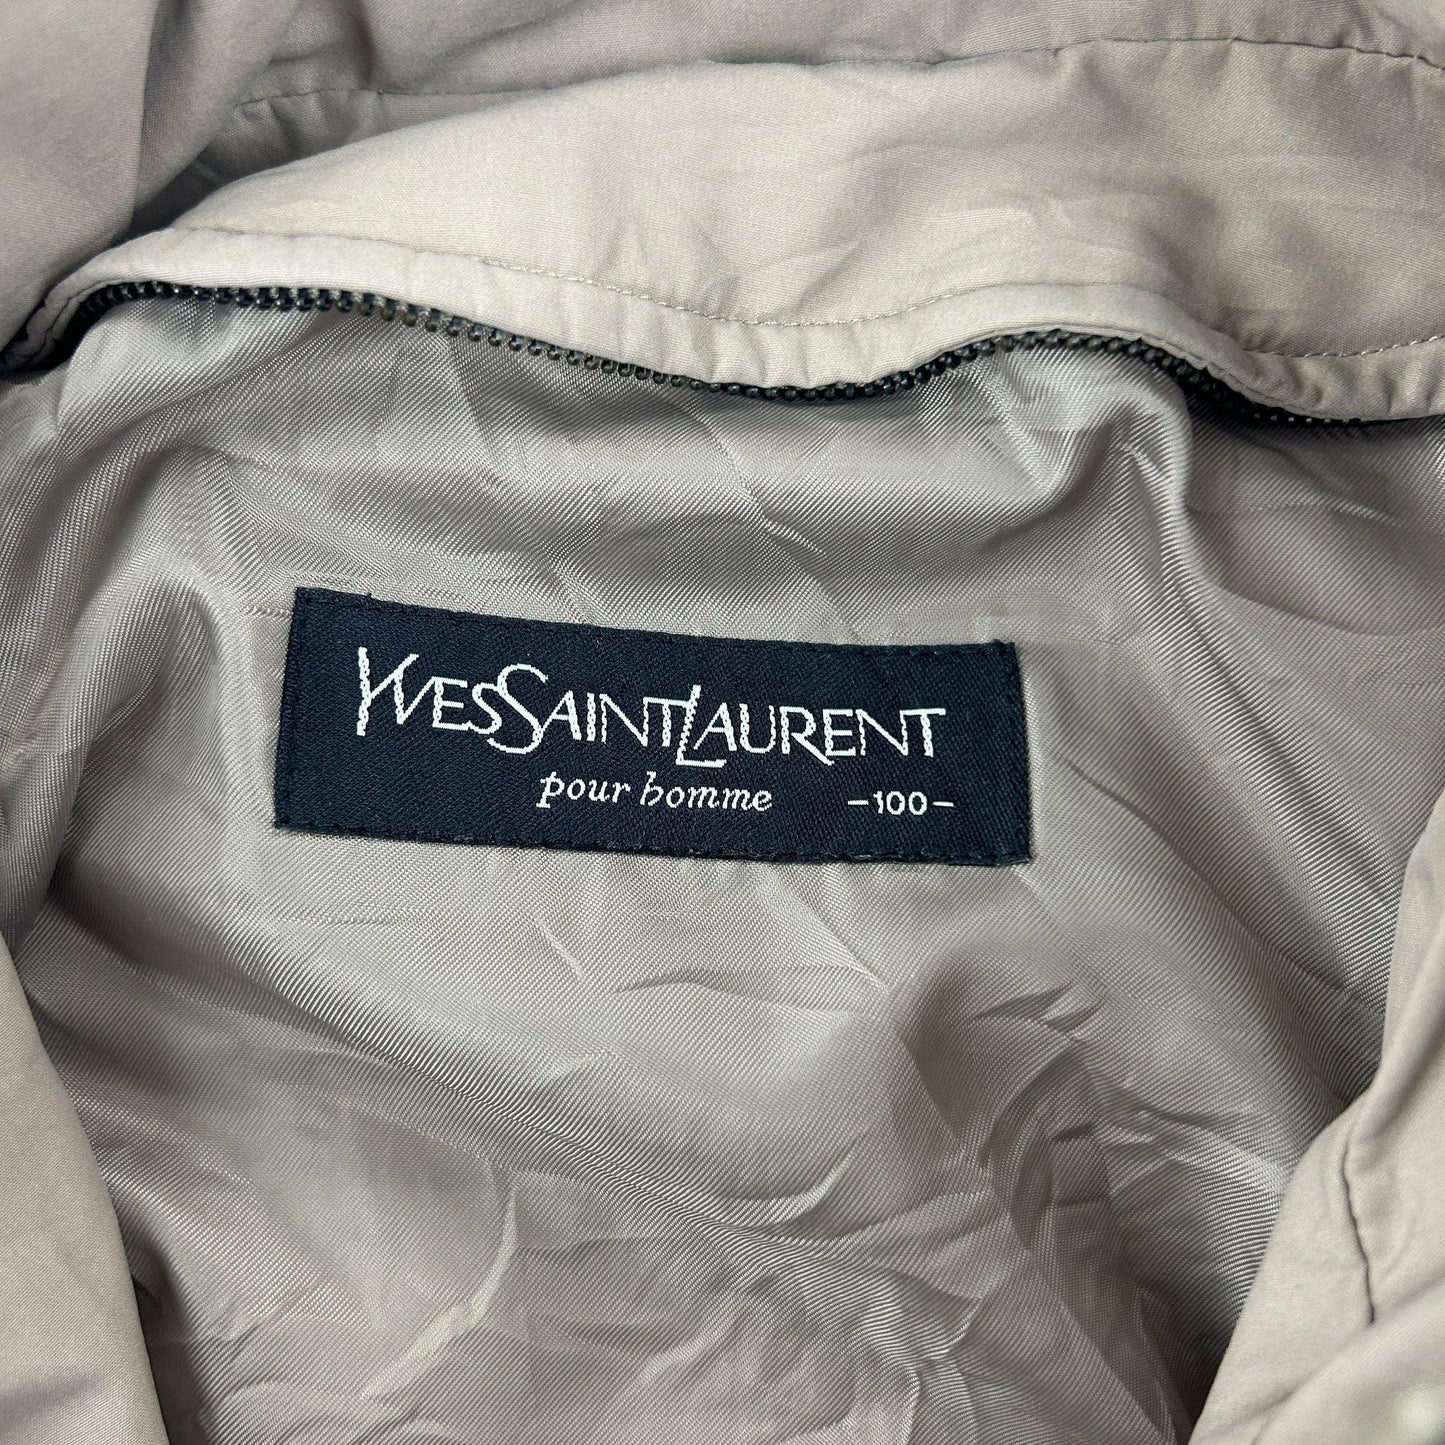 Vintage Yves Saint Laurent Jacket Size XL - Known Source